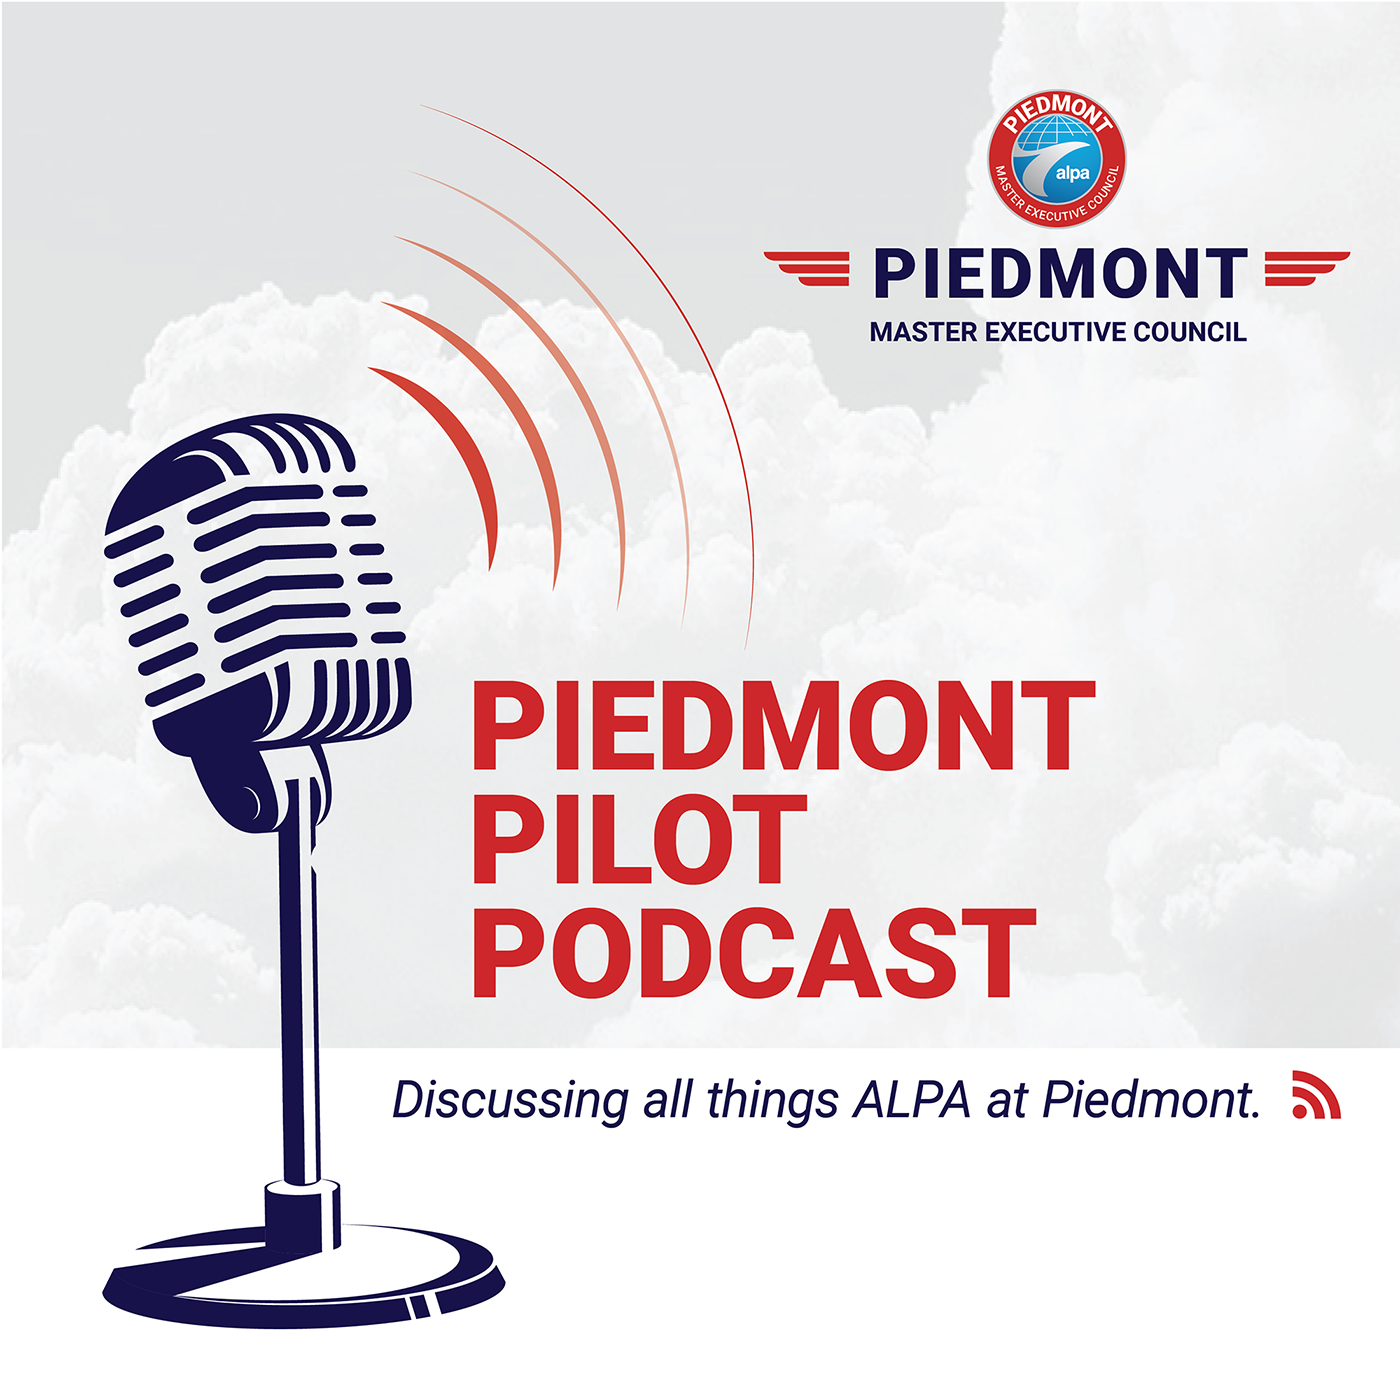 The Piedmont Pilot Podcast